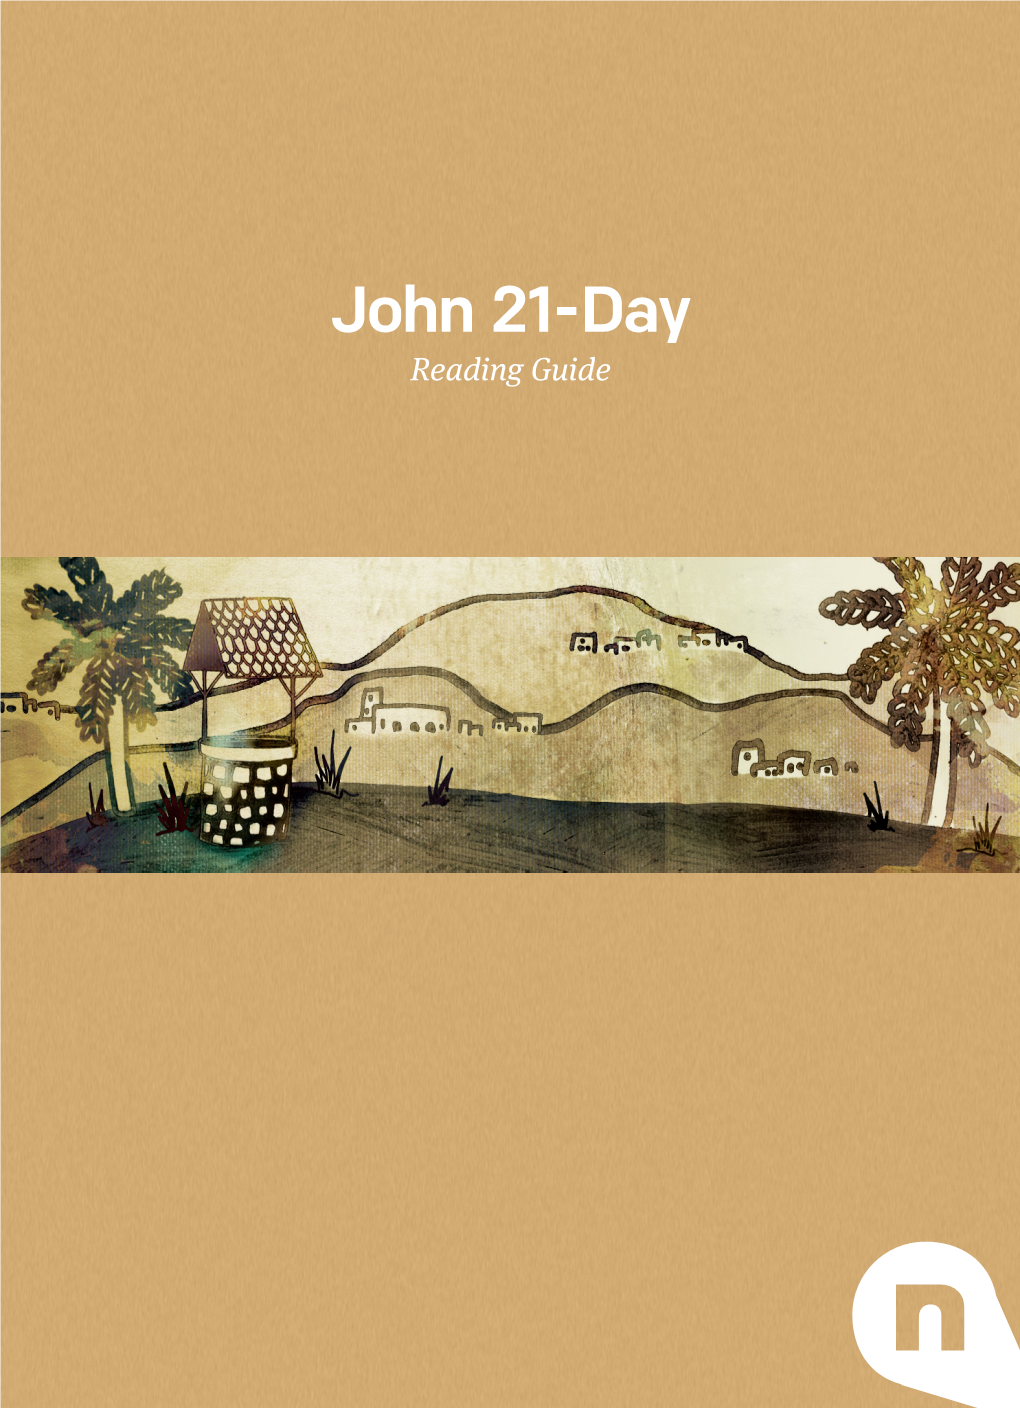 John 21-Day Reading Guide